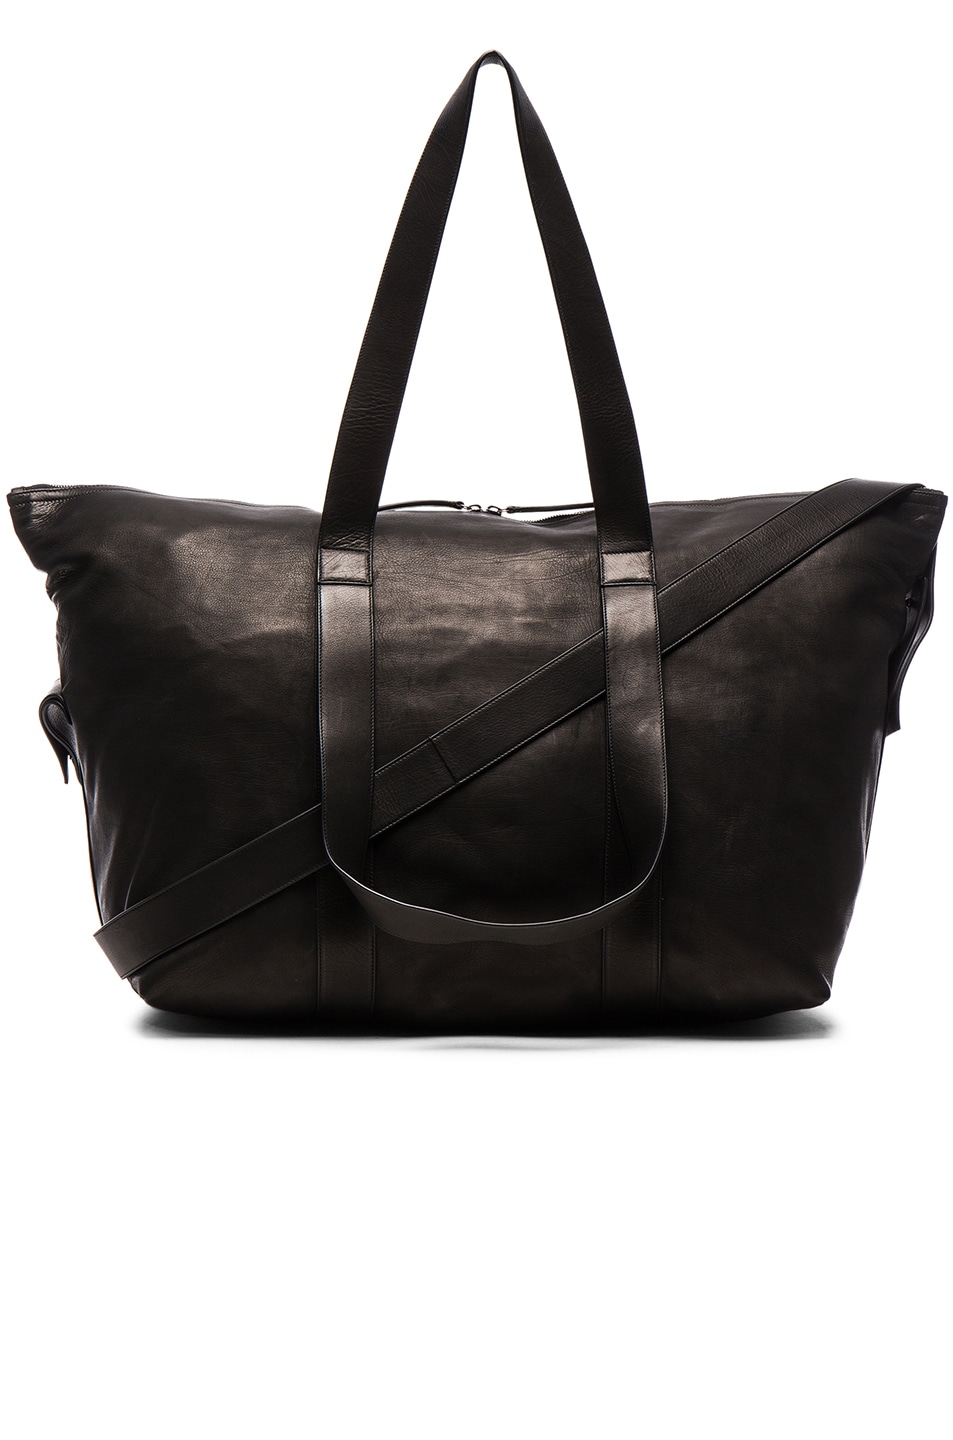 Ann Demeulemeester Black Canvas Weekender Bag | ModeSens